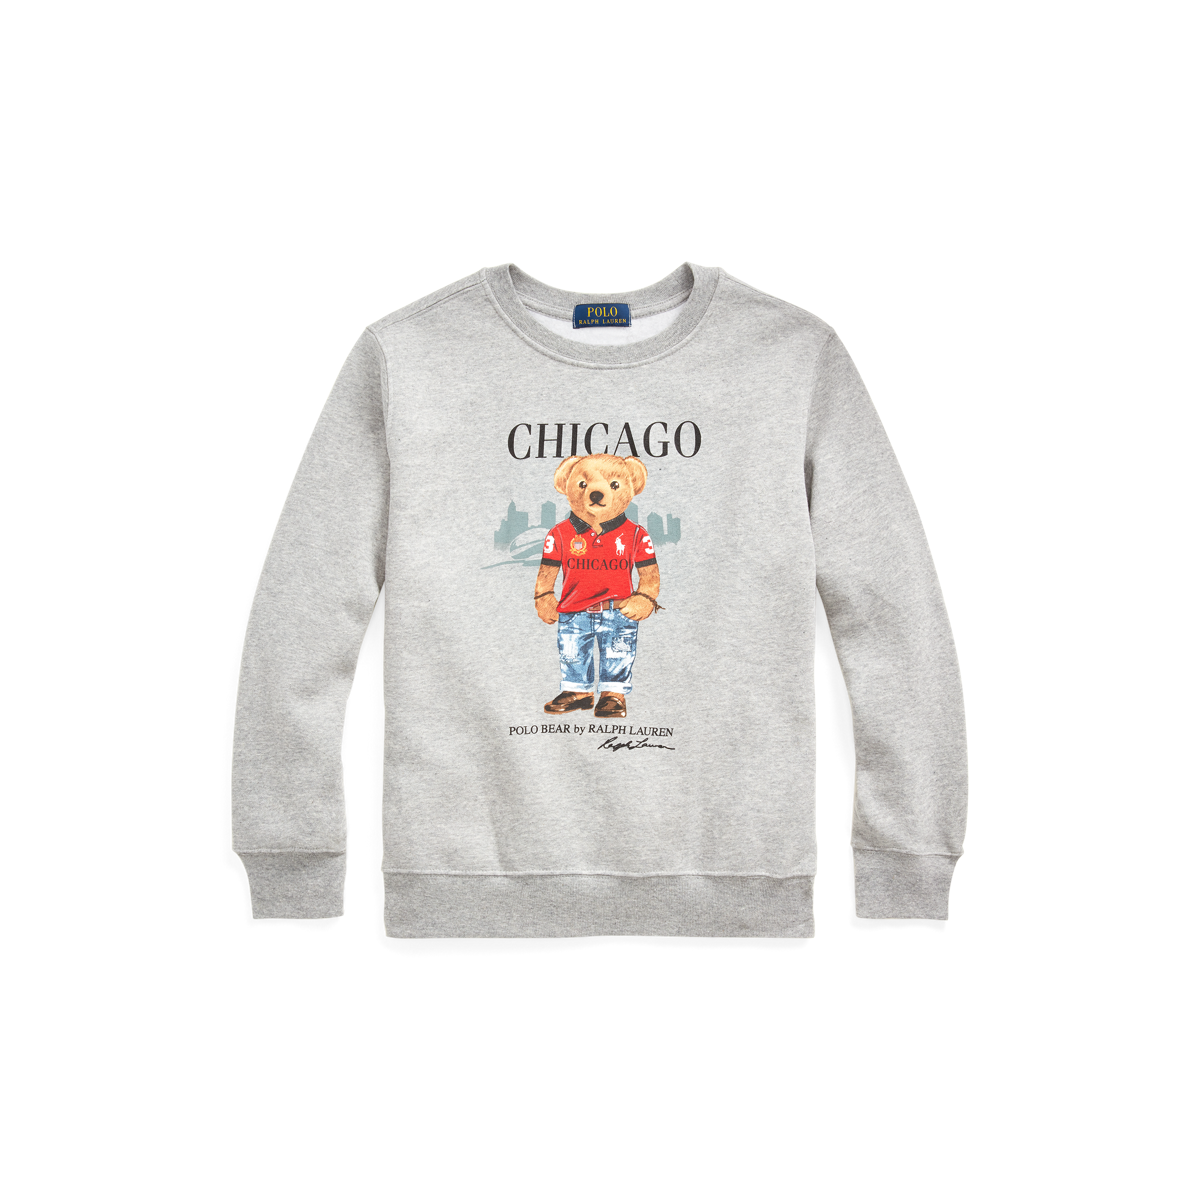 Polo Bear Chicago Fleece Sweatshirt